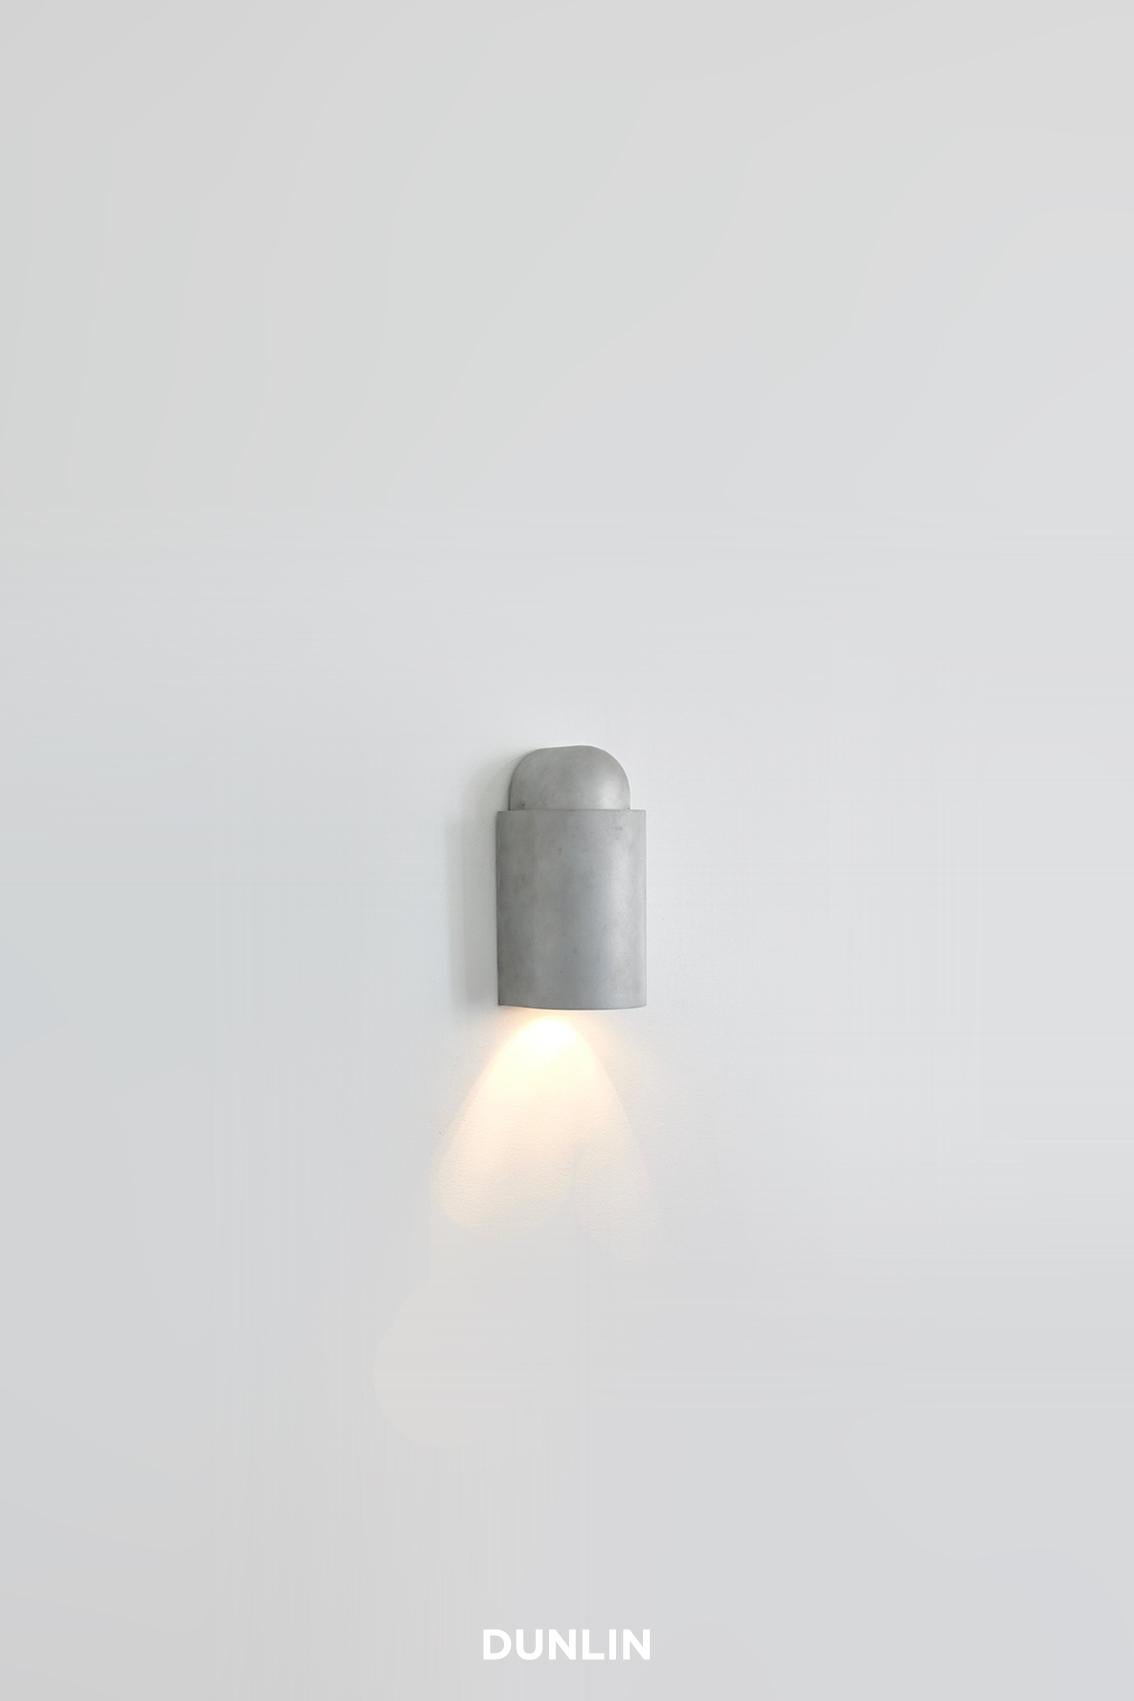 
Wir stellen die Decade Mini Stufenleuchte vor: Die in Sydney, Australien, von Dunlin entworfene Decade Mini Wall Light ist der Inbegriff von Raffinesse und eine hervorragende Option für die Beleuchtung von Treppen. Ihre robuste Bauweise garantiert